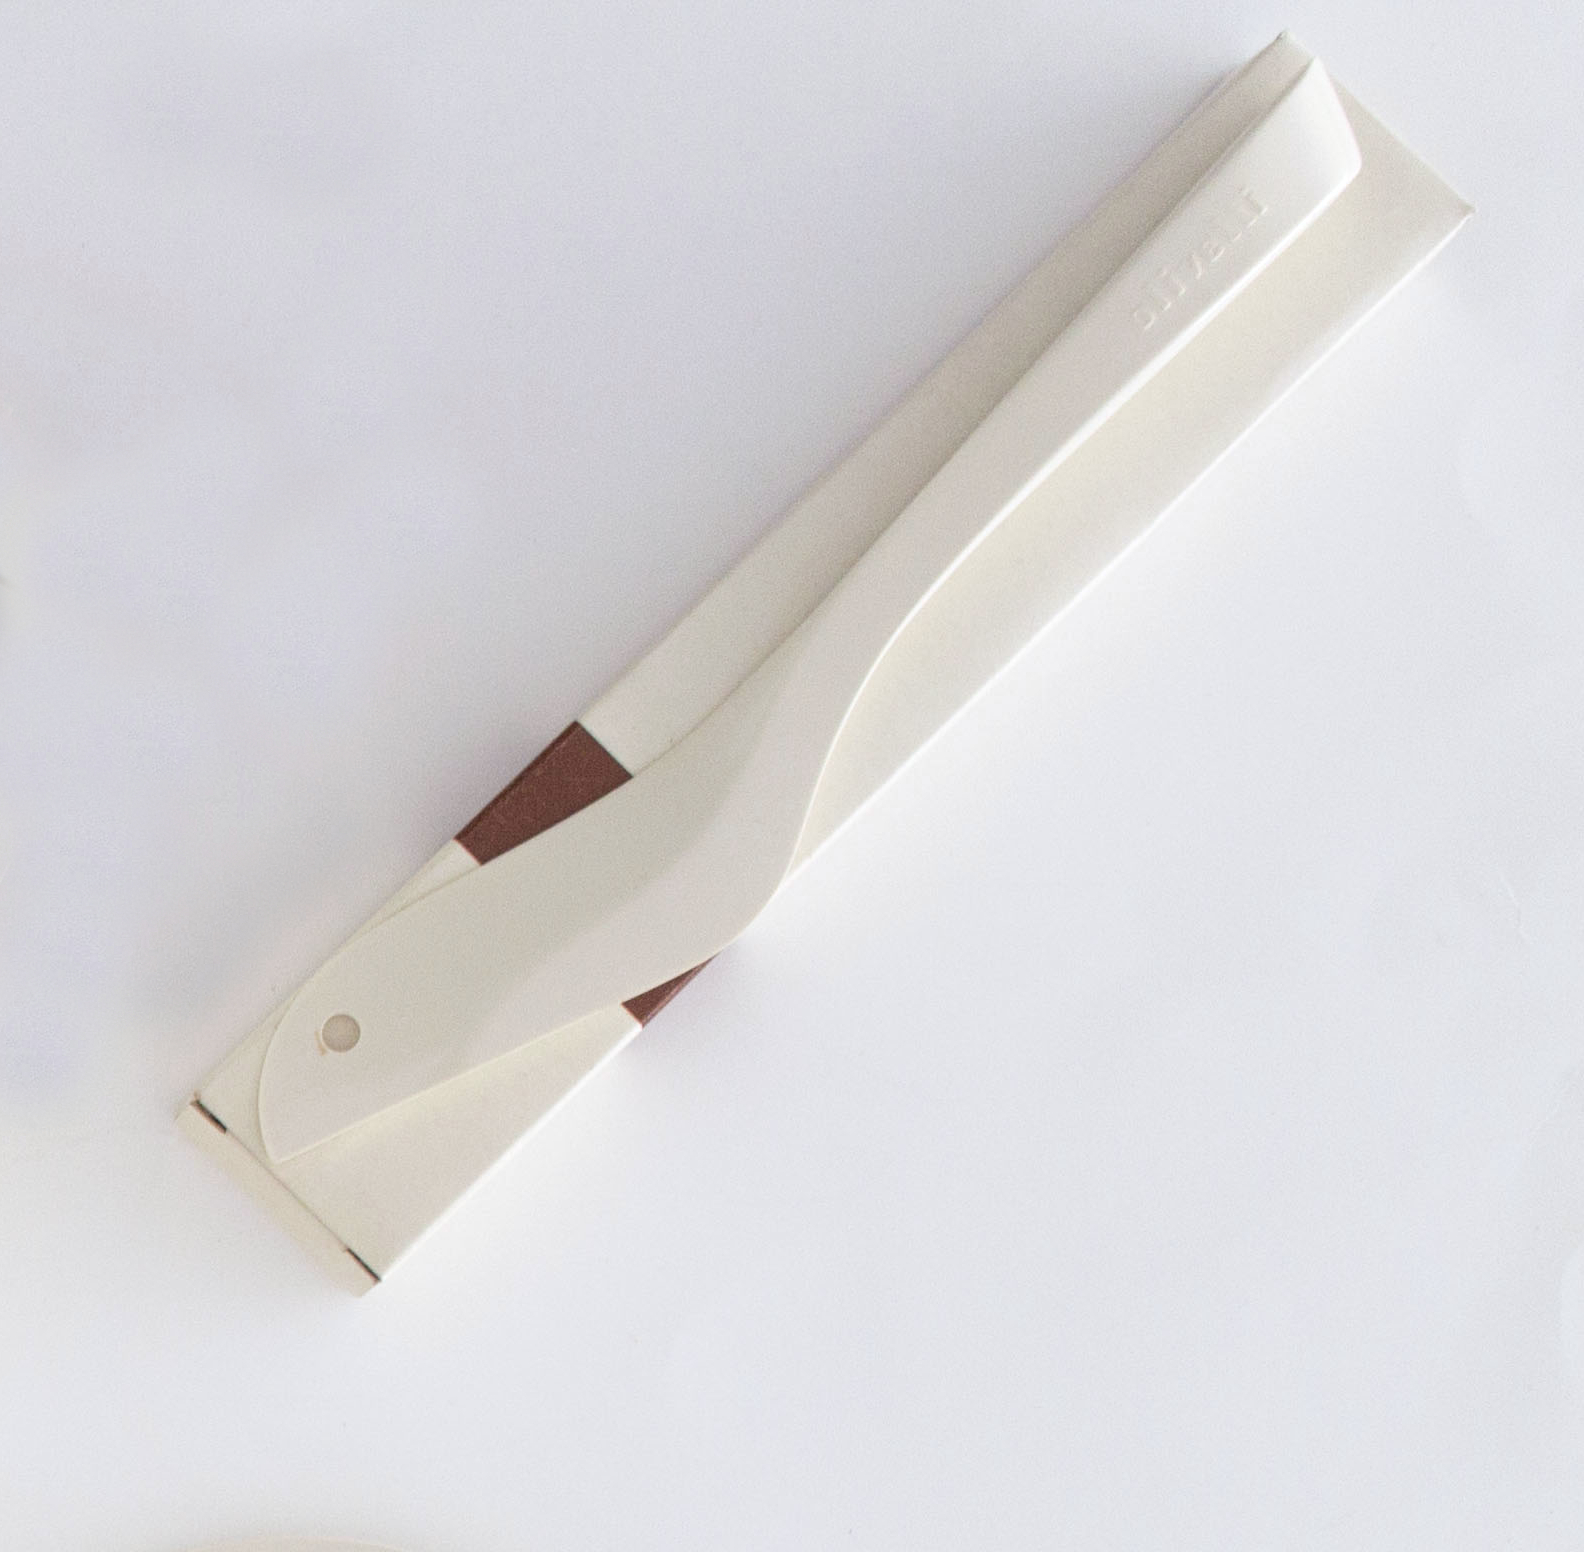 Olivetti paper knife